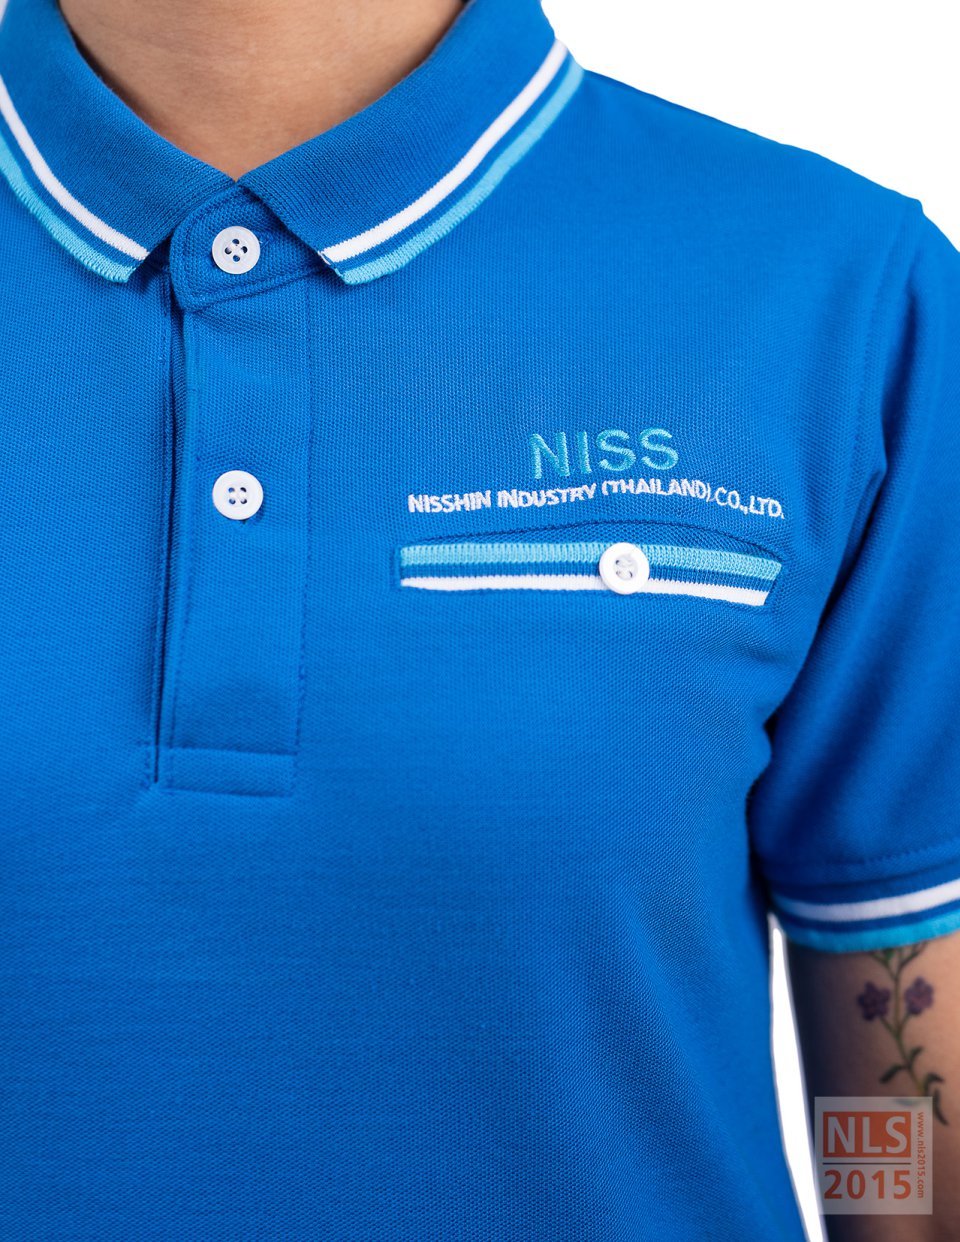 ตัวอย่างชุดฟอร์มเสื้อโปโลพนักงานบริษัท NISS / นลินสิริ รับผลิตเสื้อโปโลพนักงานรูปที่ 